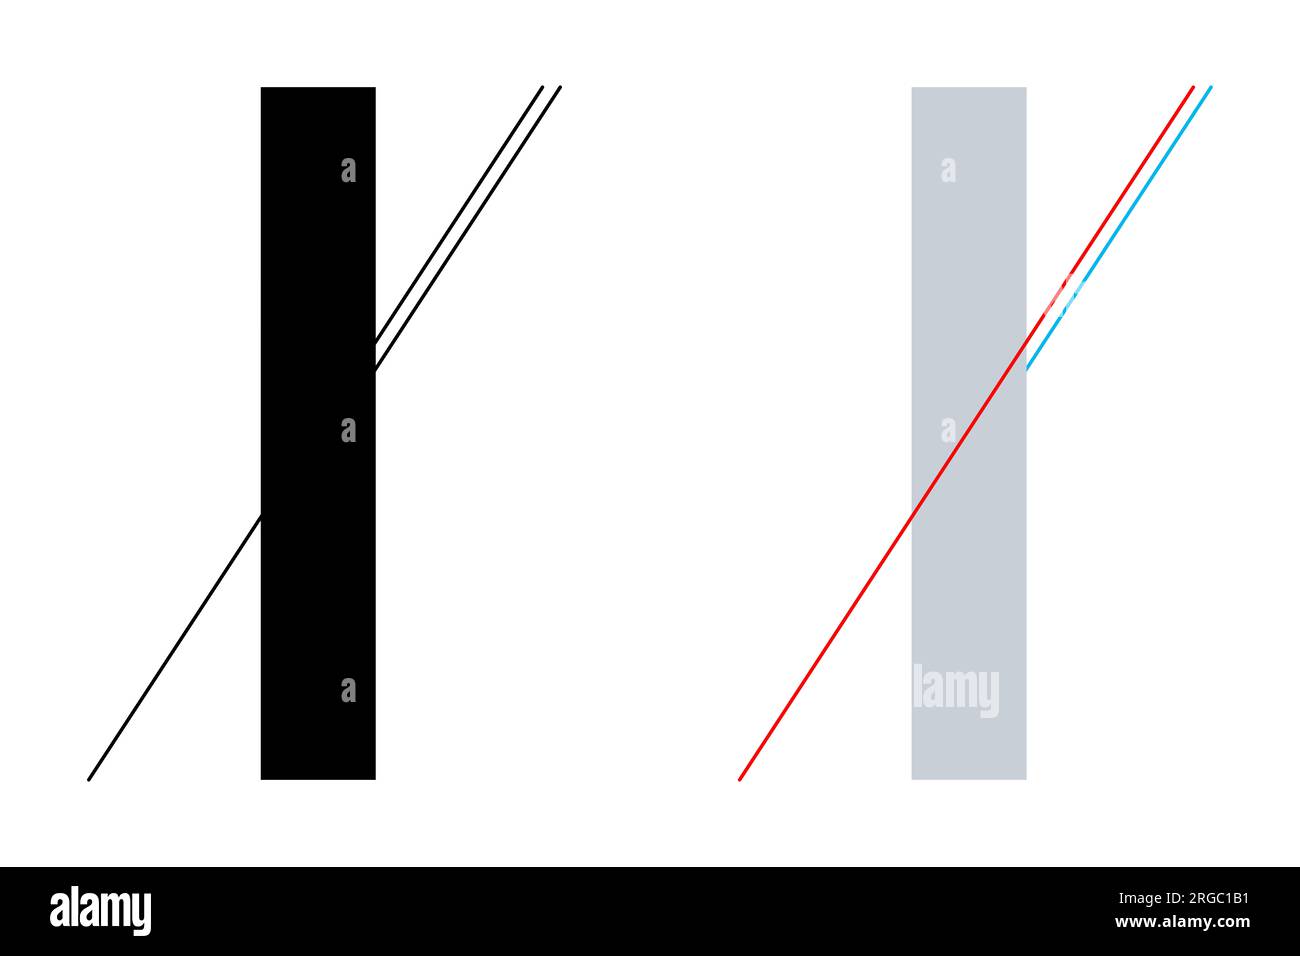 Illusione ottica geometrica Poggendorff. La continuazione della linea in basso a sinistra è confusa con la linea più corta sul lato destro sottostante. Foto Stock